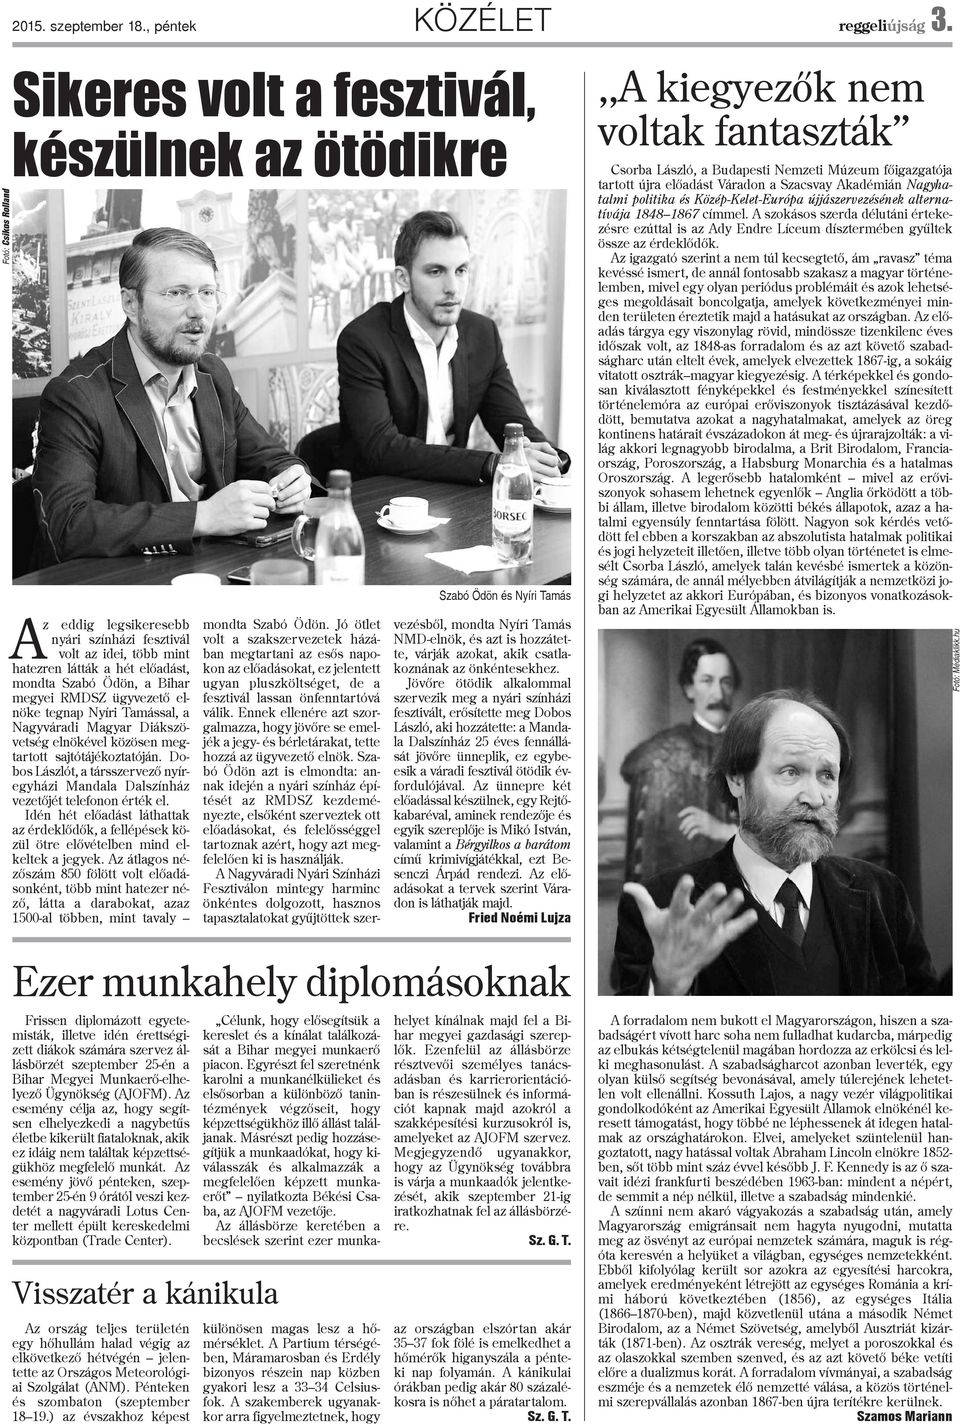 RMDSZ ügyvezetõ enöke tegnap Nyíri Tamássa, a Nagyváradi Magyar Diákszövetség enökéve közösen megtartott sajtótájékoztatóján.